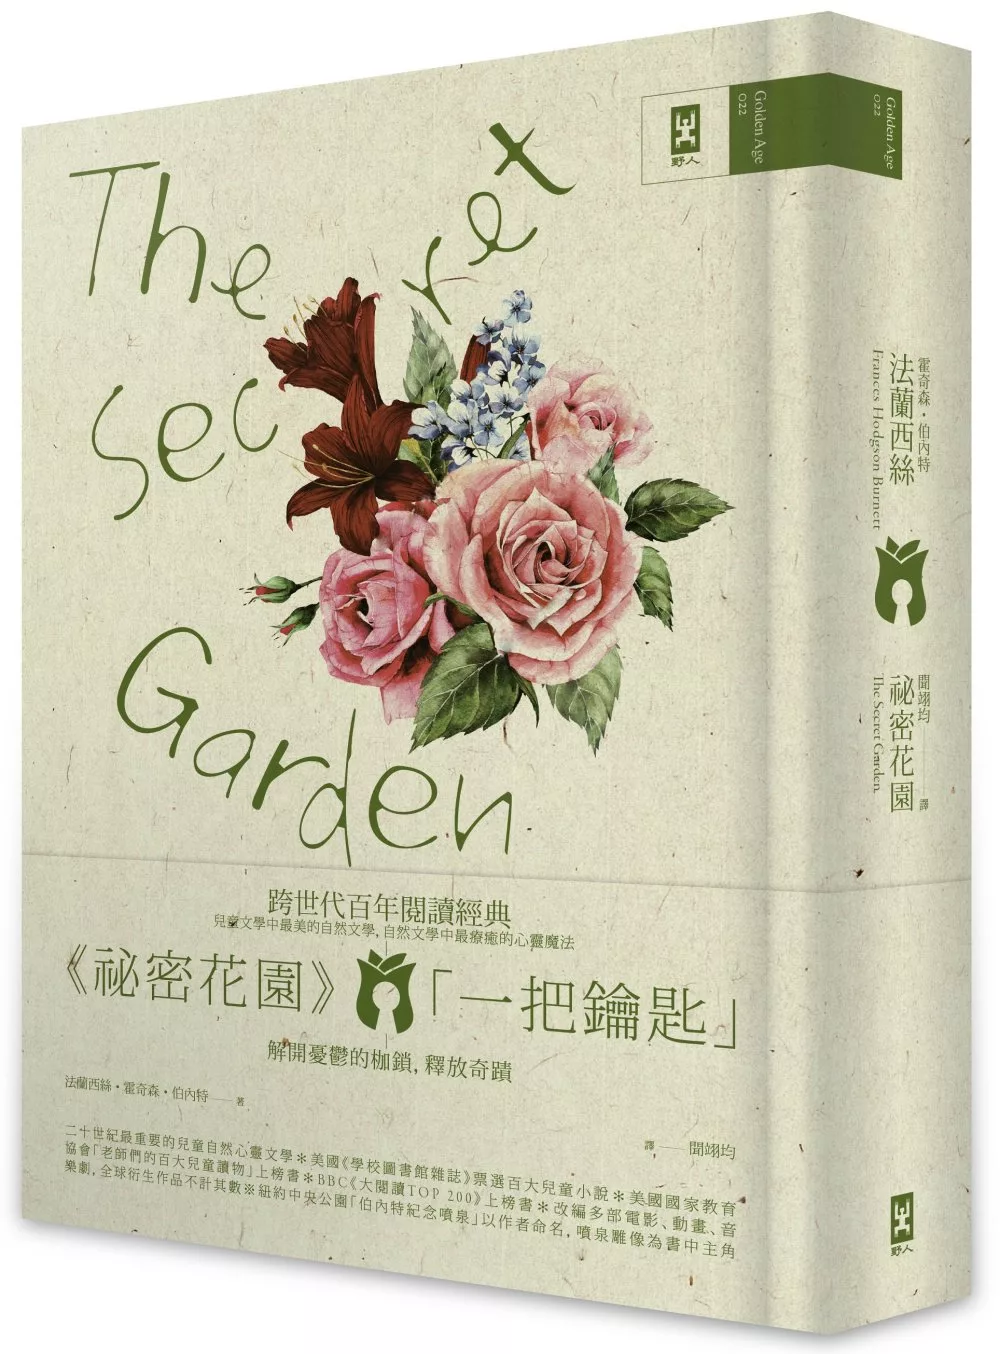 祕密花園 The Secret Garden：電影原著、少女成長小說經典共讀(懷舊精裝版)